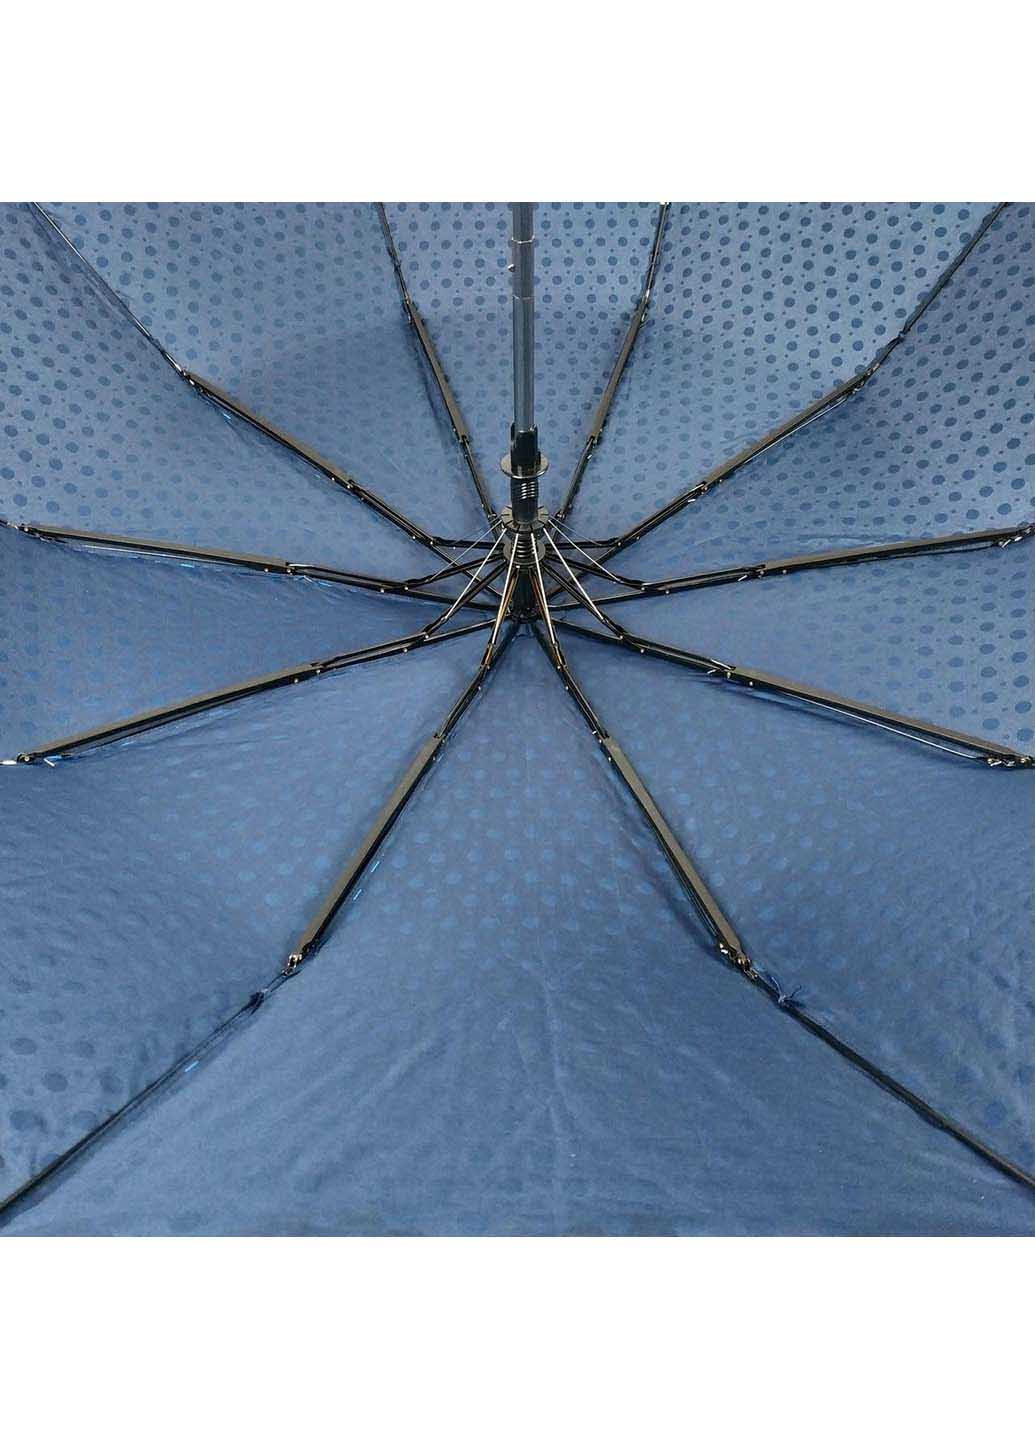 Зонт SL 33057-5 складной комбинированный